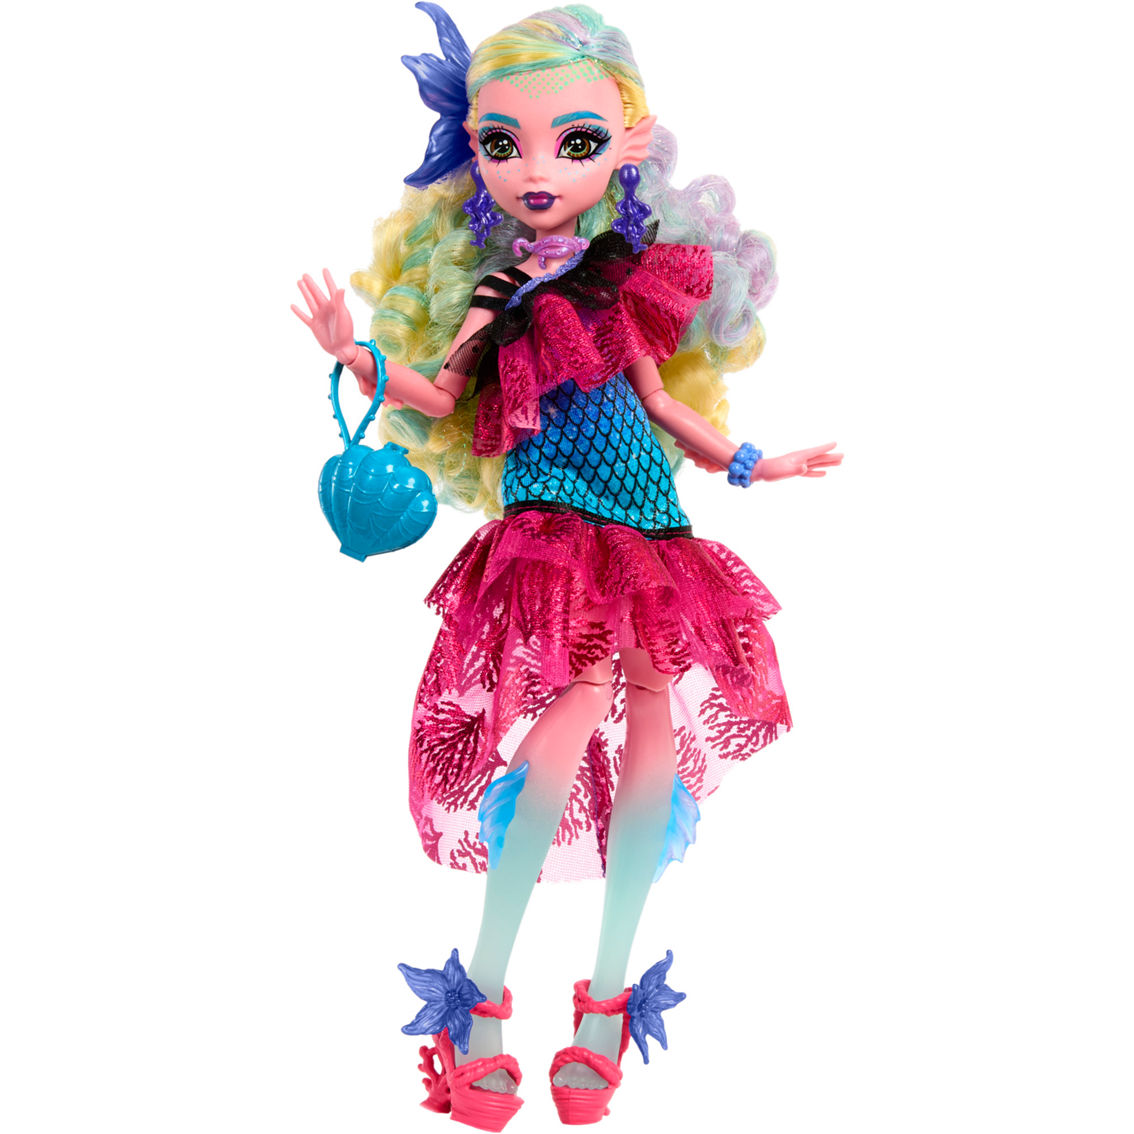 Mattel Monster High Monster Ball Lagoona Blue Doll - Image 3 of 6